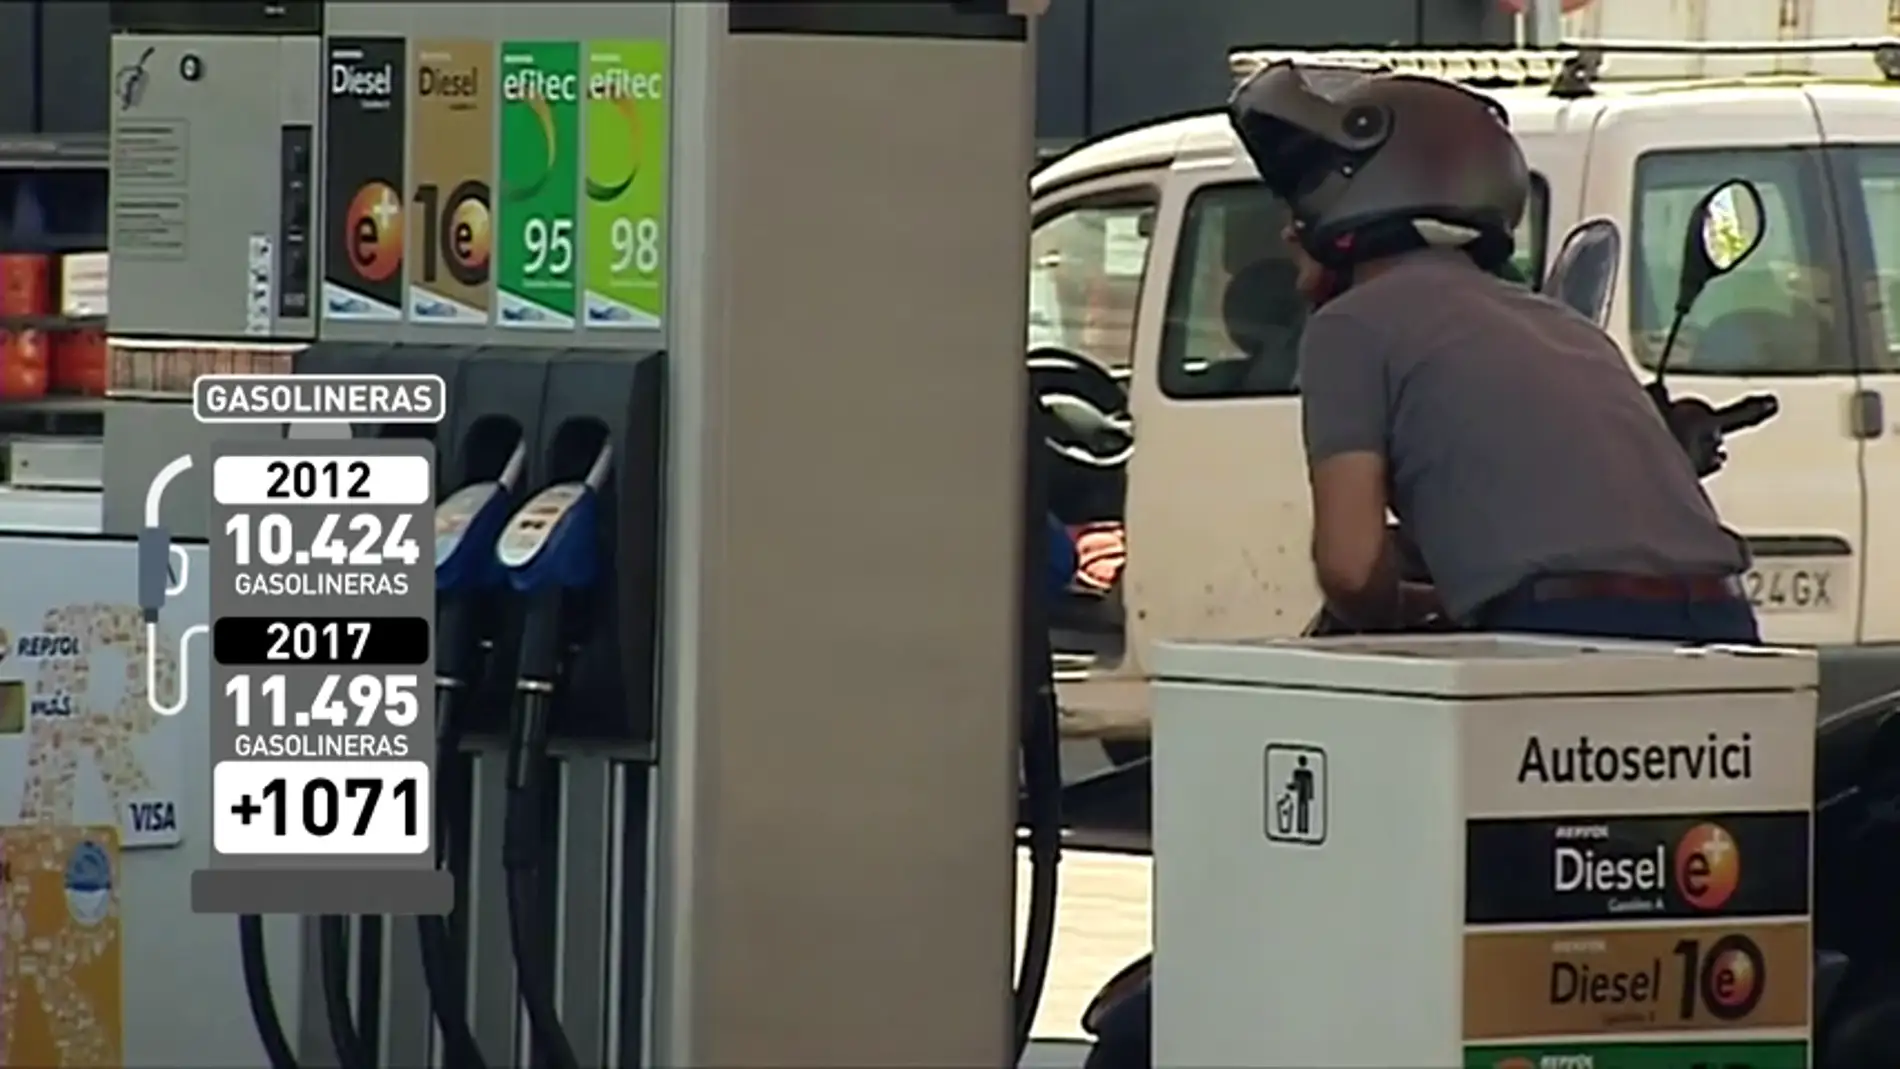 <p>El boom de las gasolineras "low cost" en España</p>